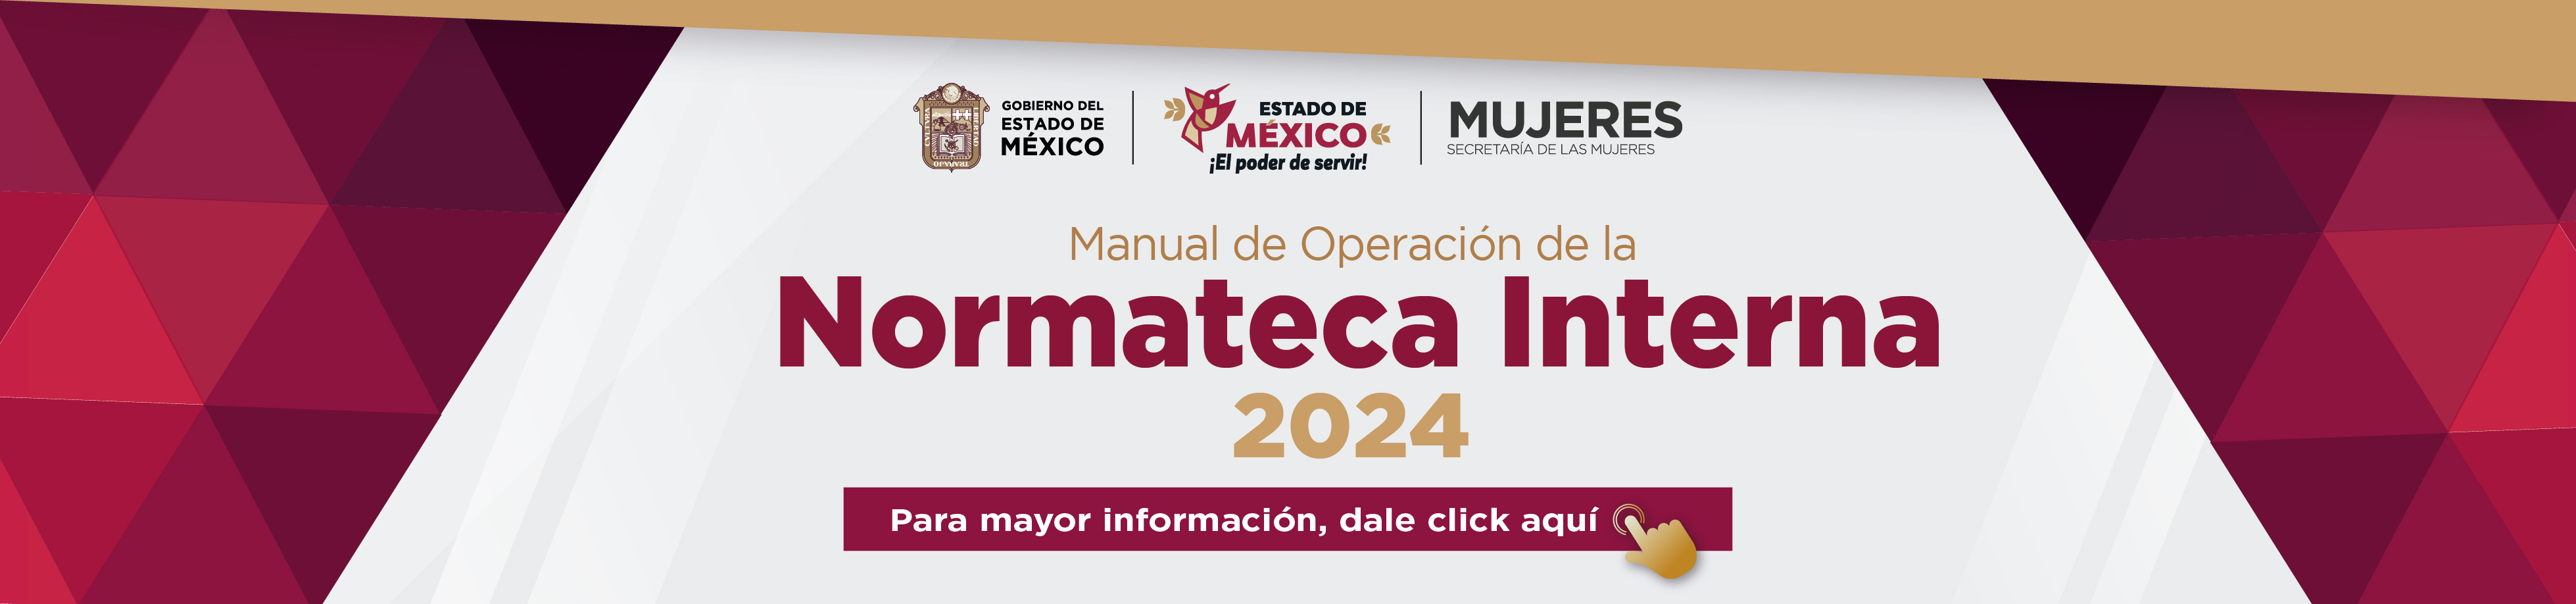 Manual de Operación de la Normateca Interna 2024